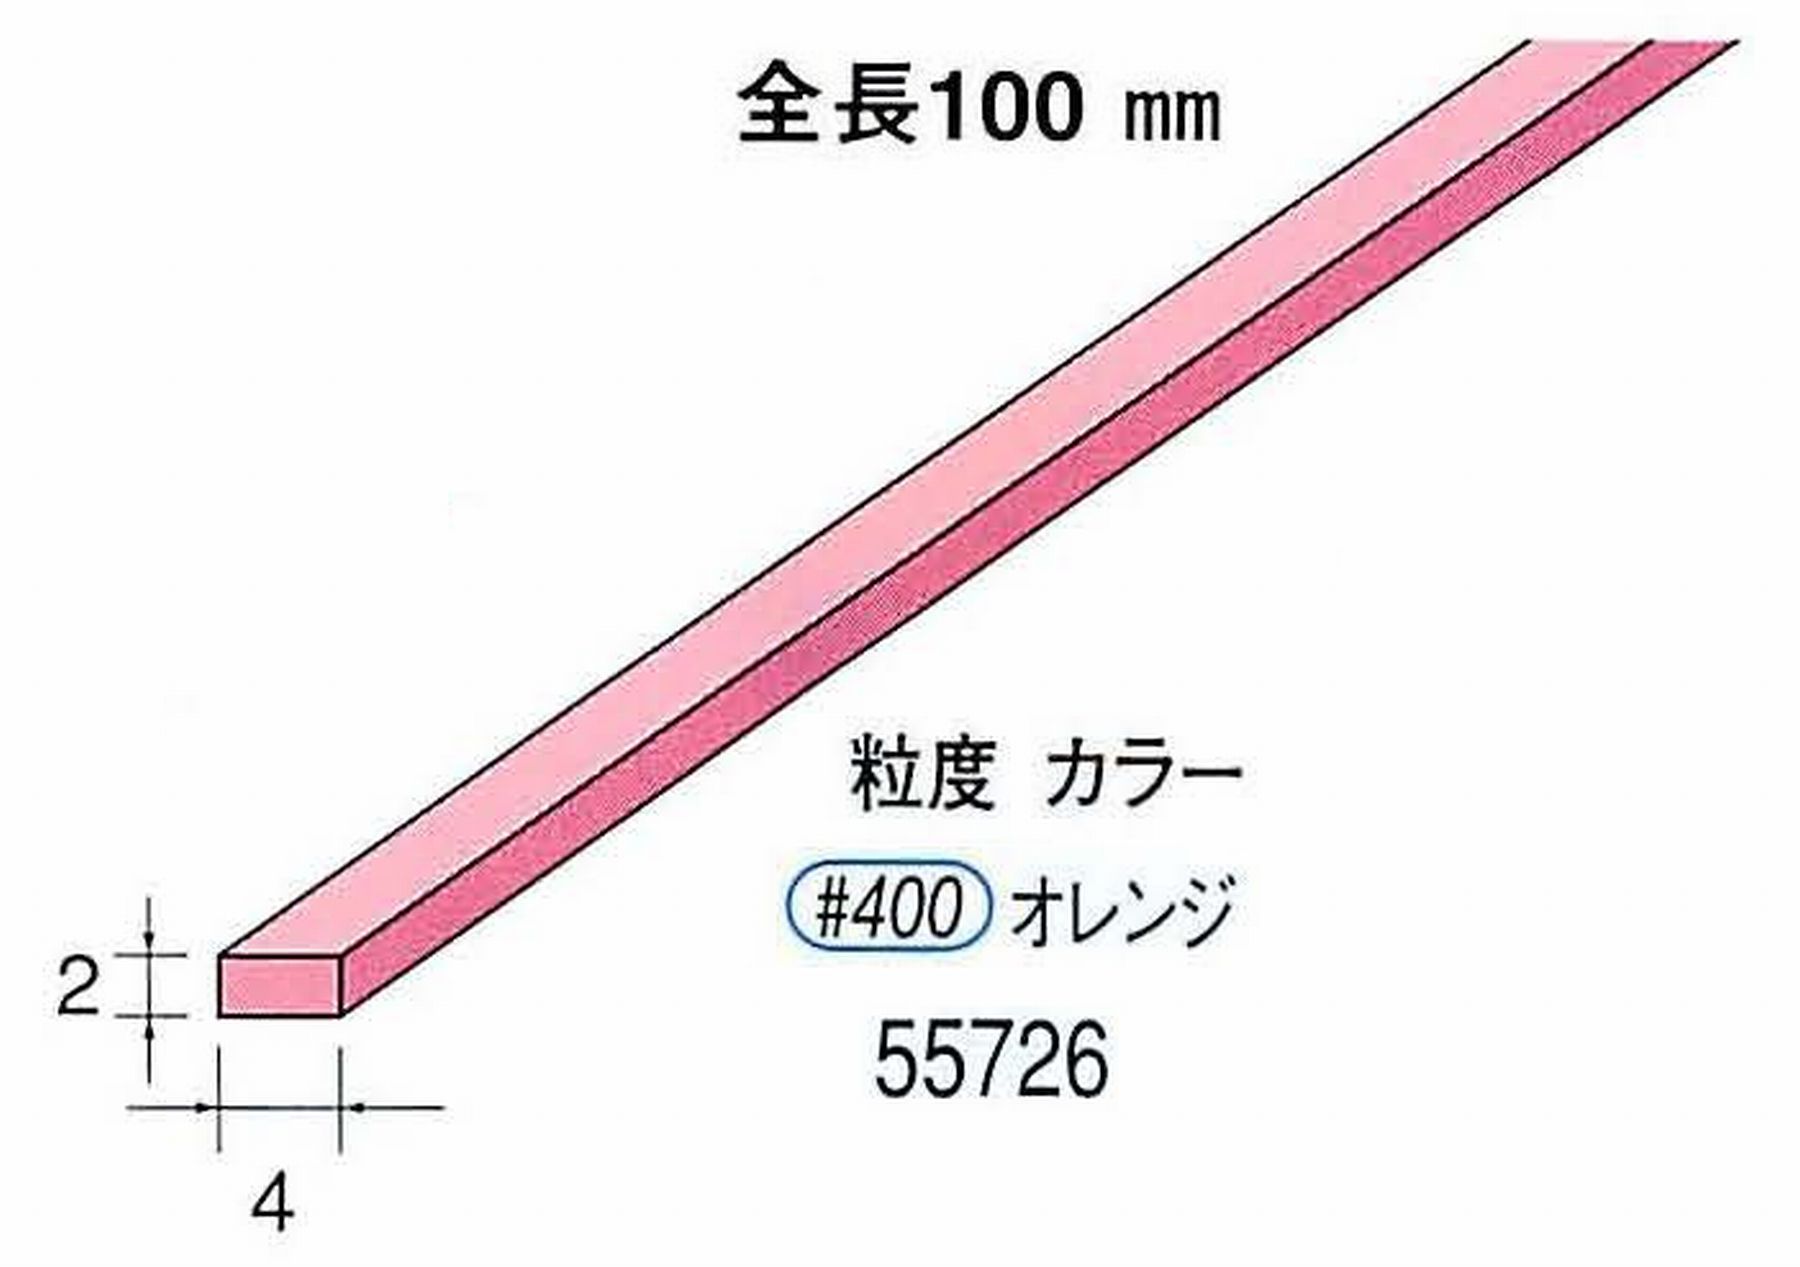 ナカニシ/NAKANISHI セラファイバー砥石 全長100mm オレンジ 55726